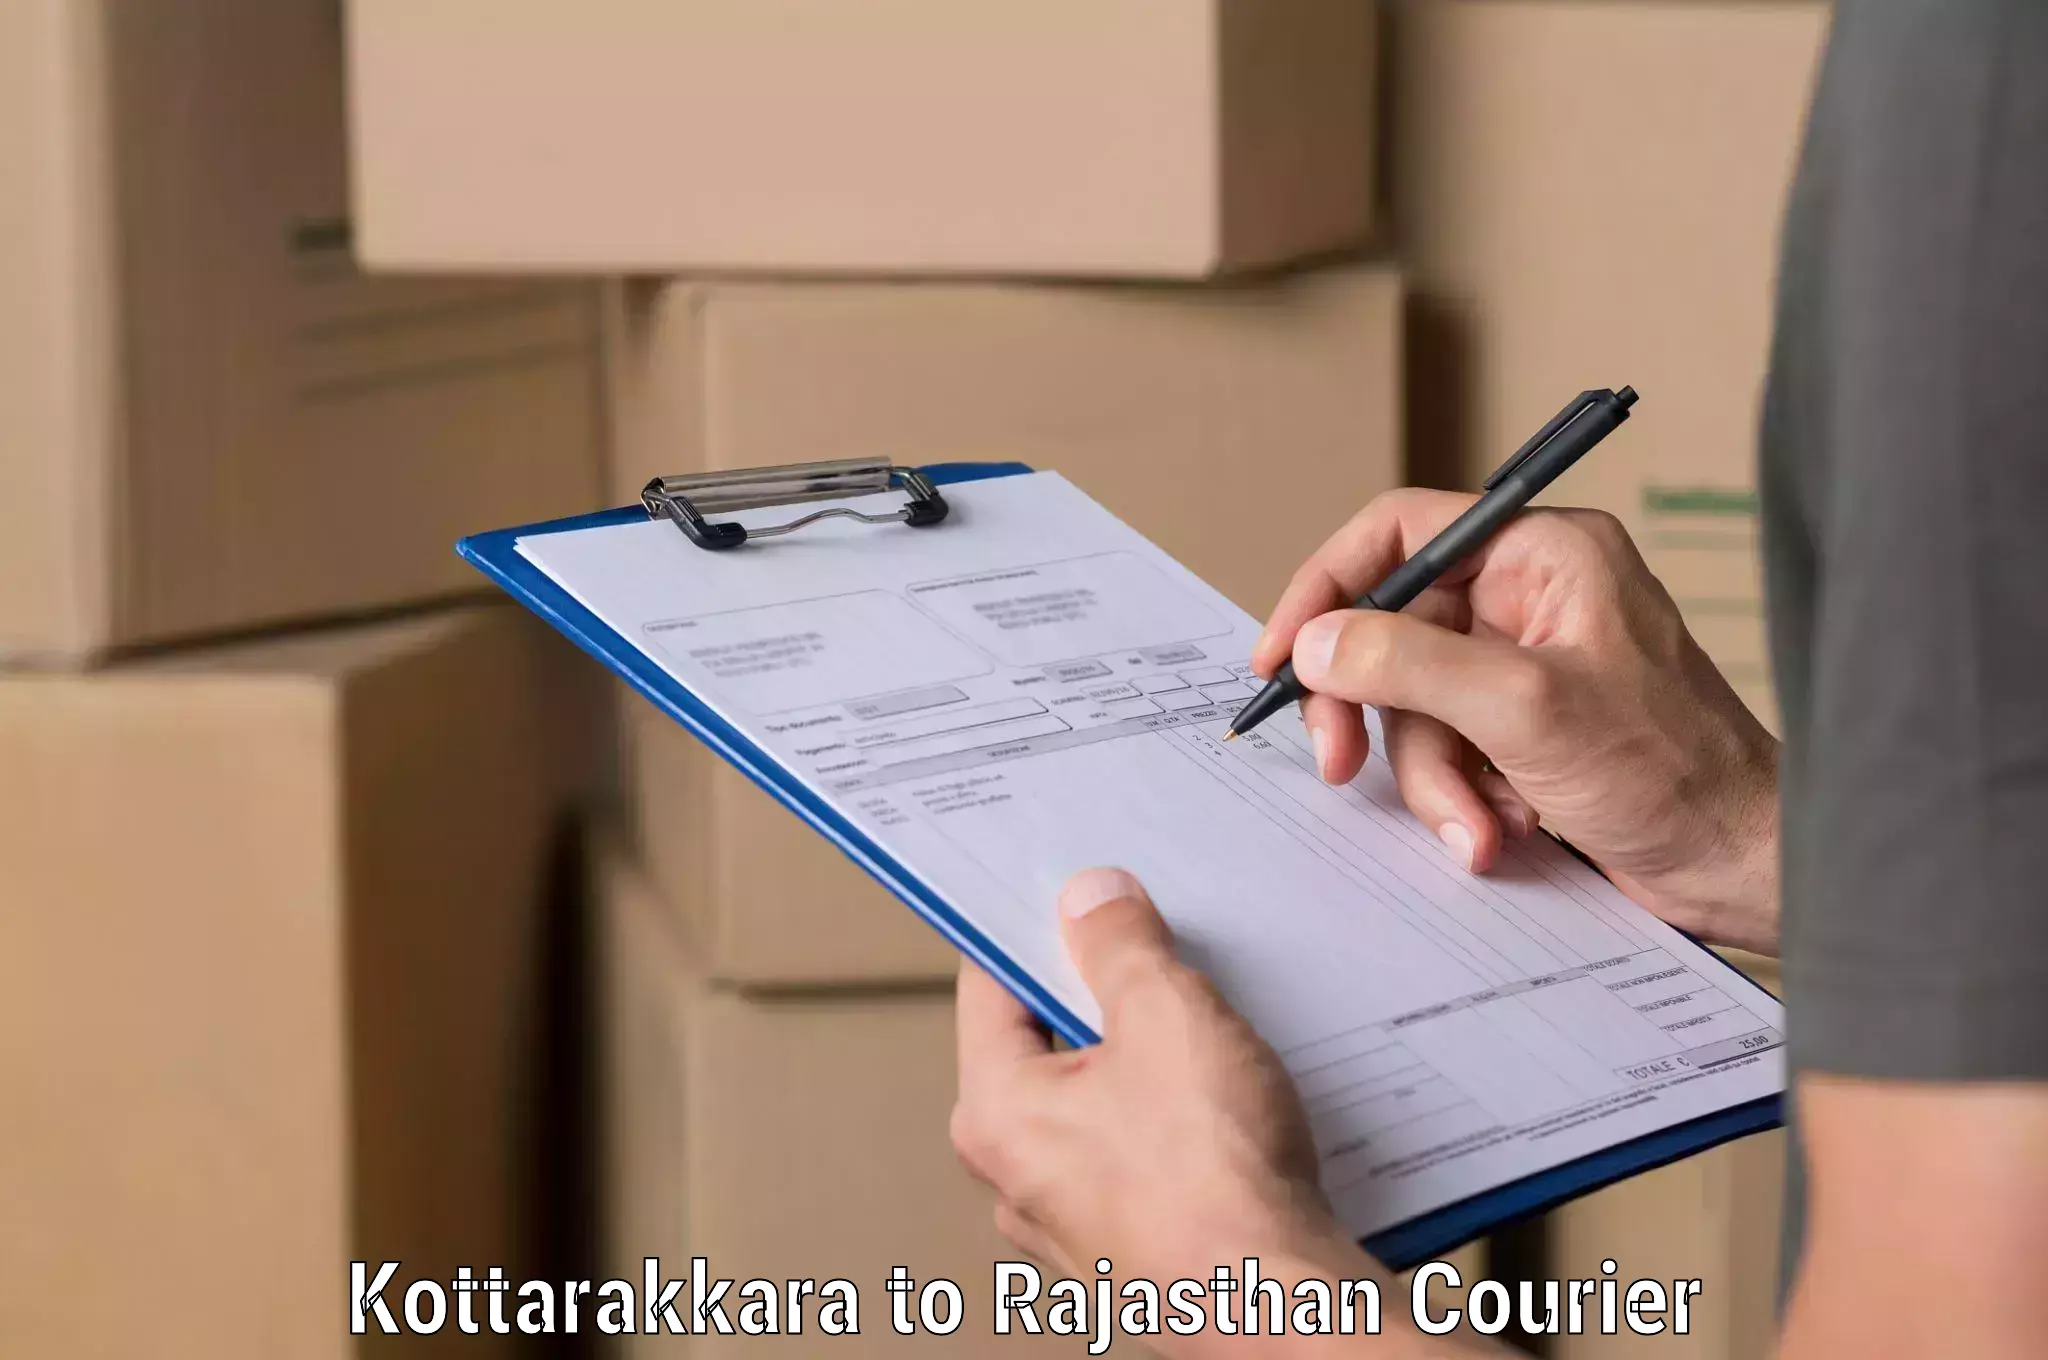 Bulk shipment Kottarakkara to Rajasthan